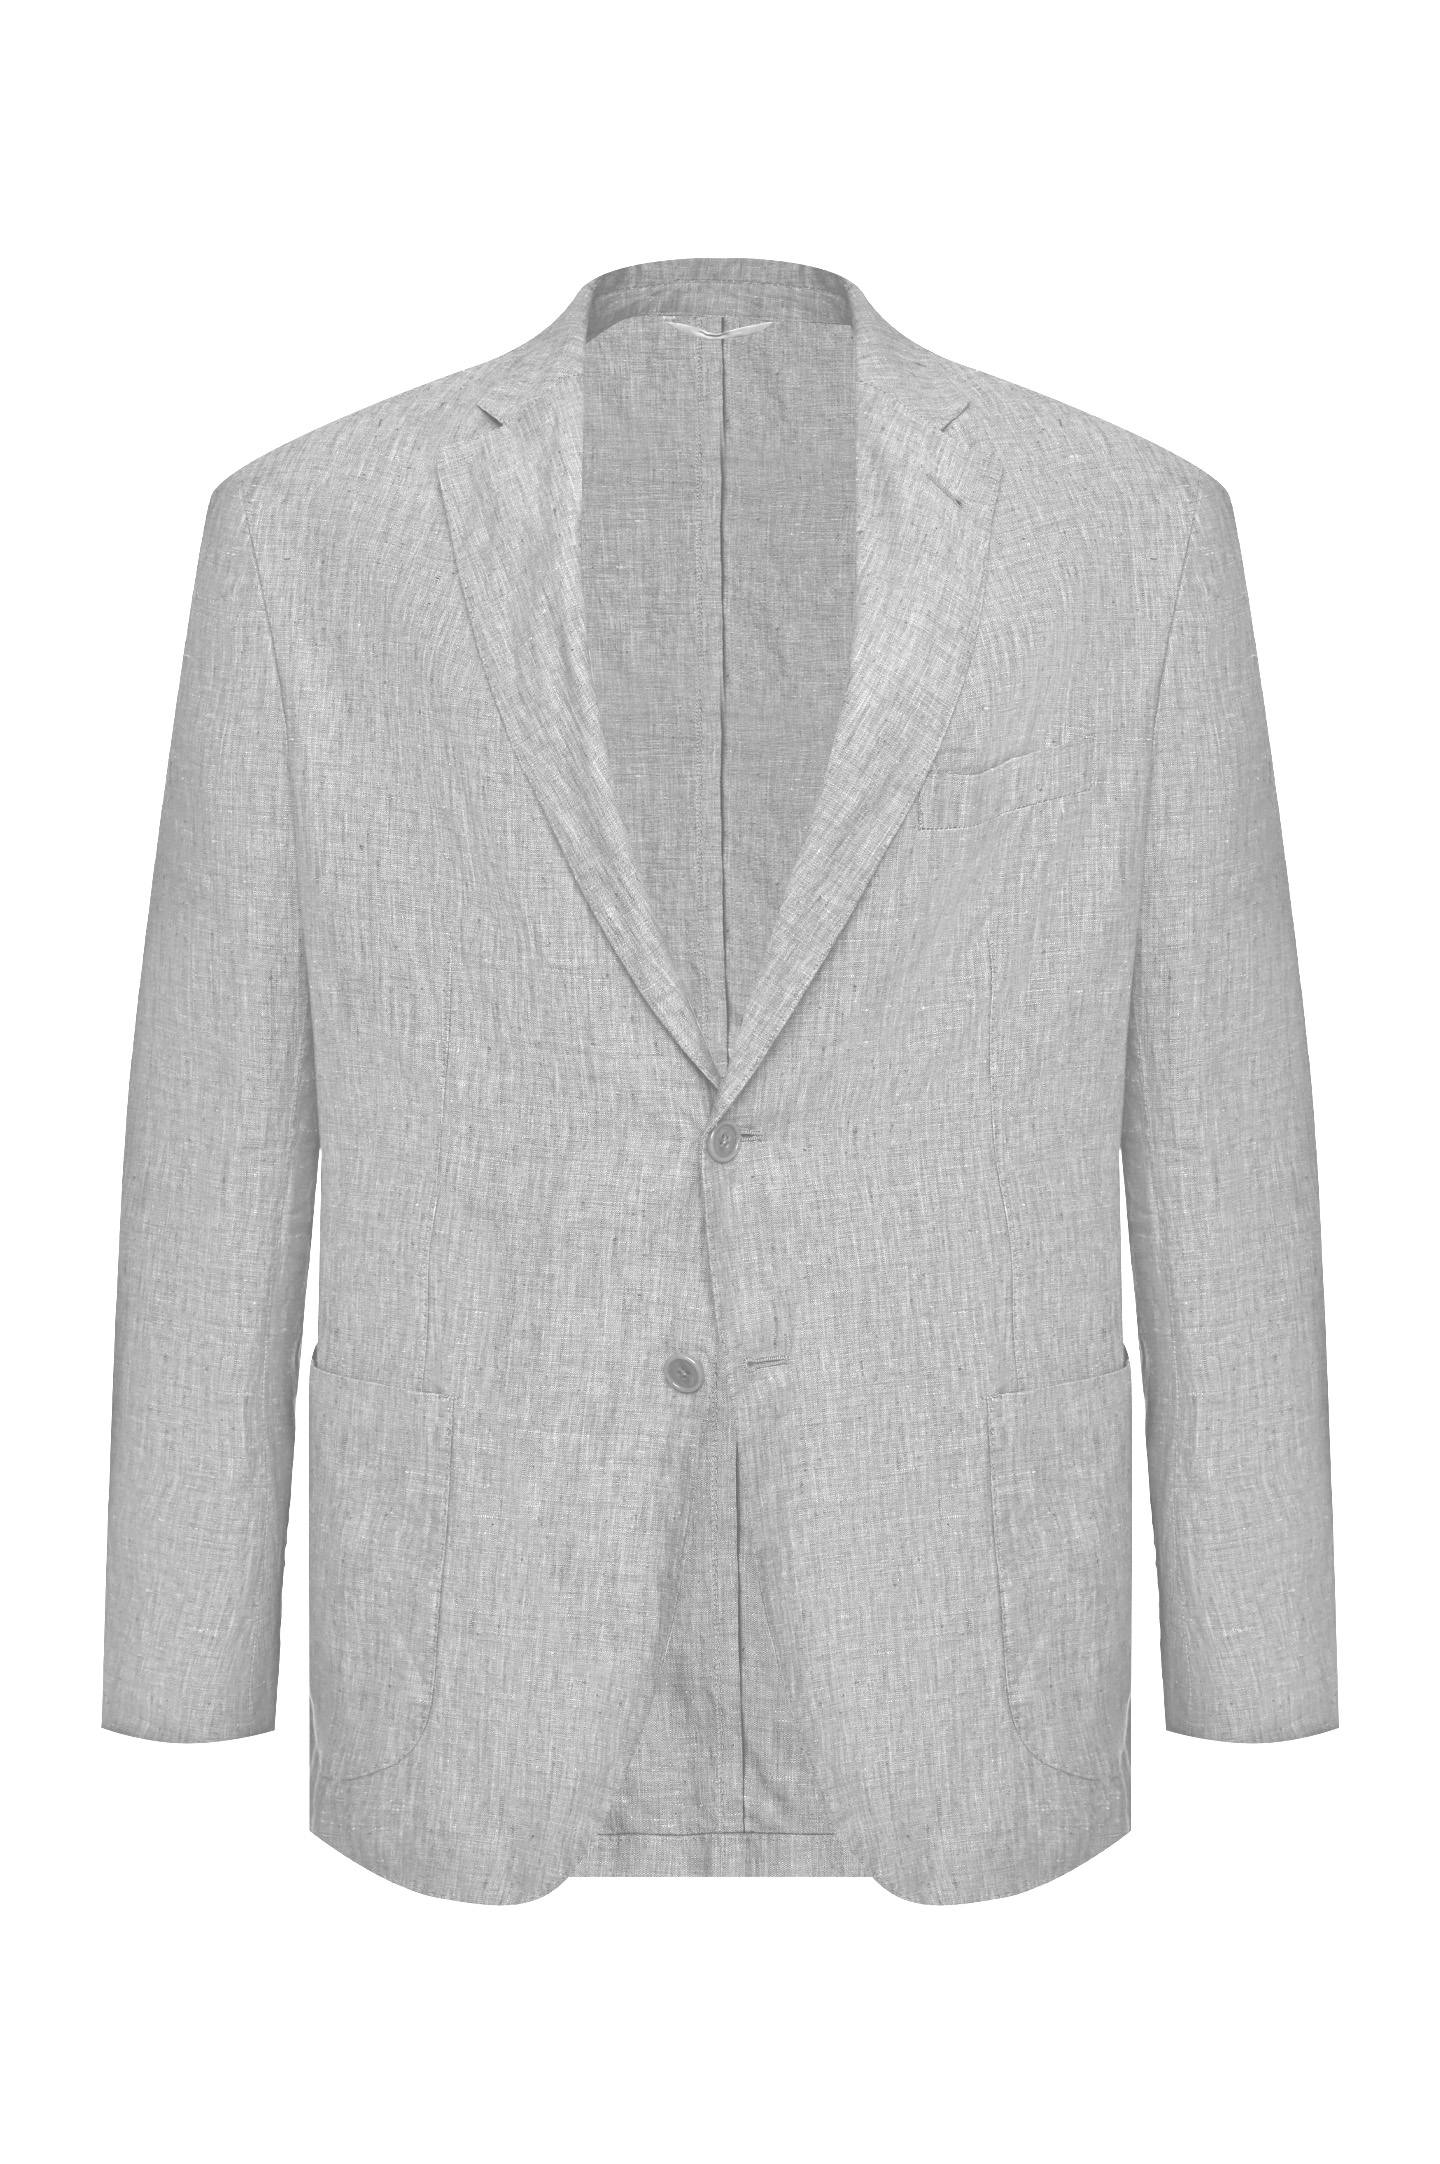 Пиджак DORIANI CASHMERE C138/269LAV-7-S, цвет: Серый, Мужской